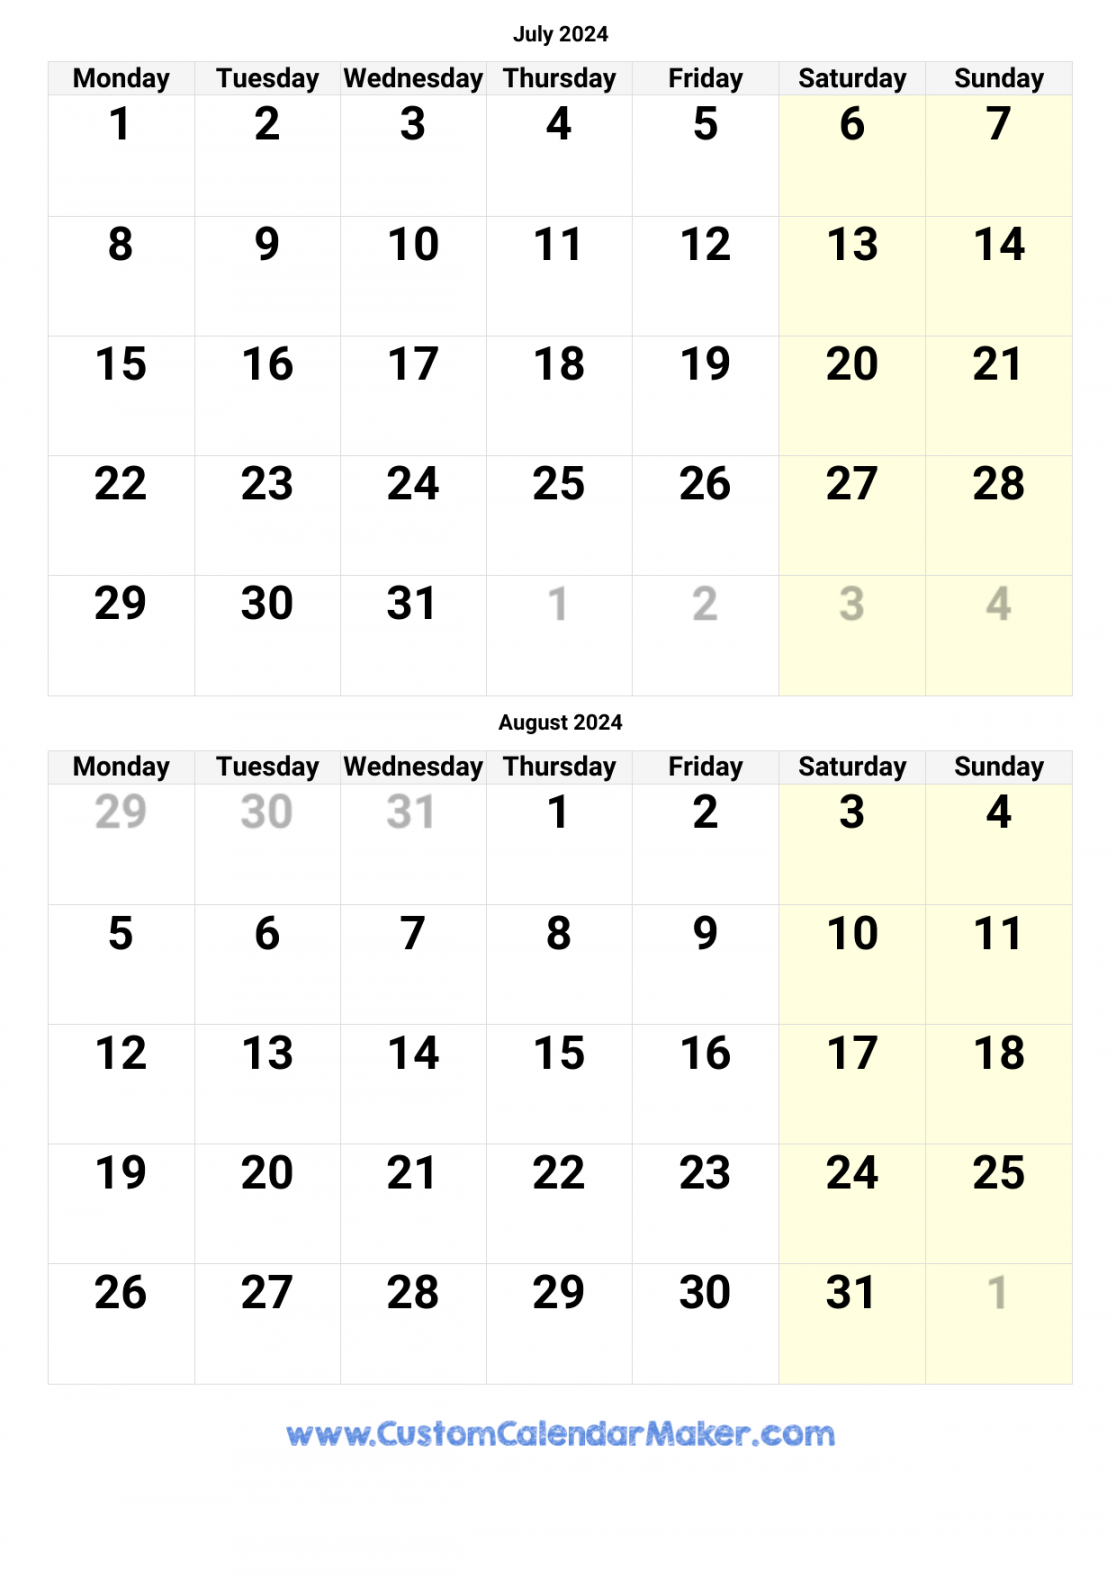 www customcalendarmaker com calendars months july